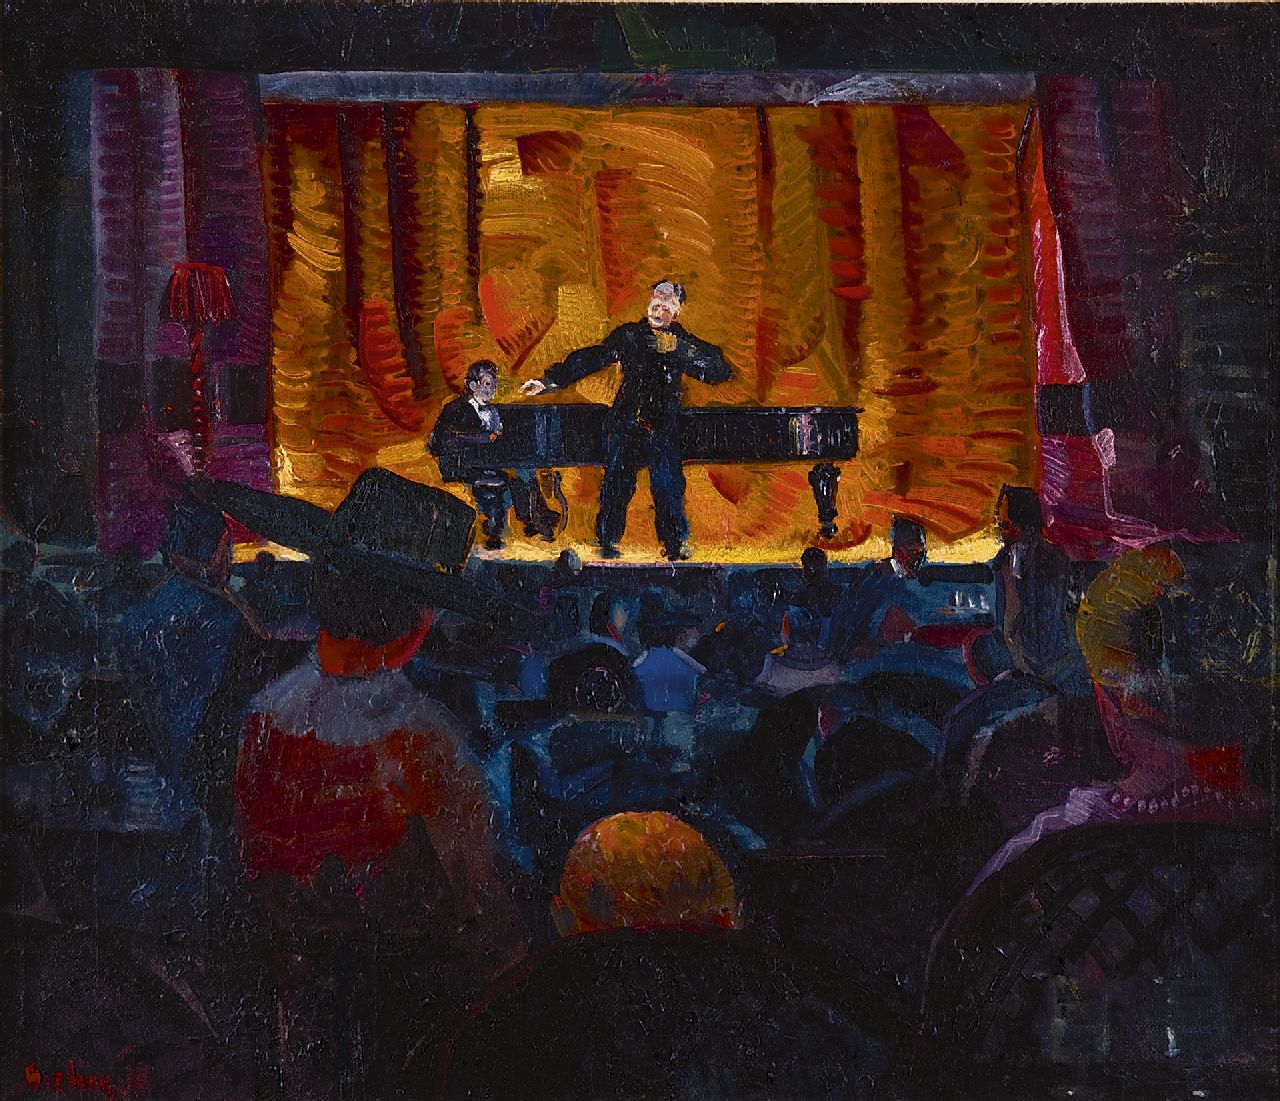 Bieling H.F.  | Hermann Friederich 'Herman' Bieling | Schilderijen te koop aangeboden | Het Cabaret Artistique (1912-1927) van J.L. Pisuisse, olieverf op doek 46,2 x 53,5 cm, gesigneerd linksonder